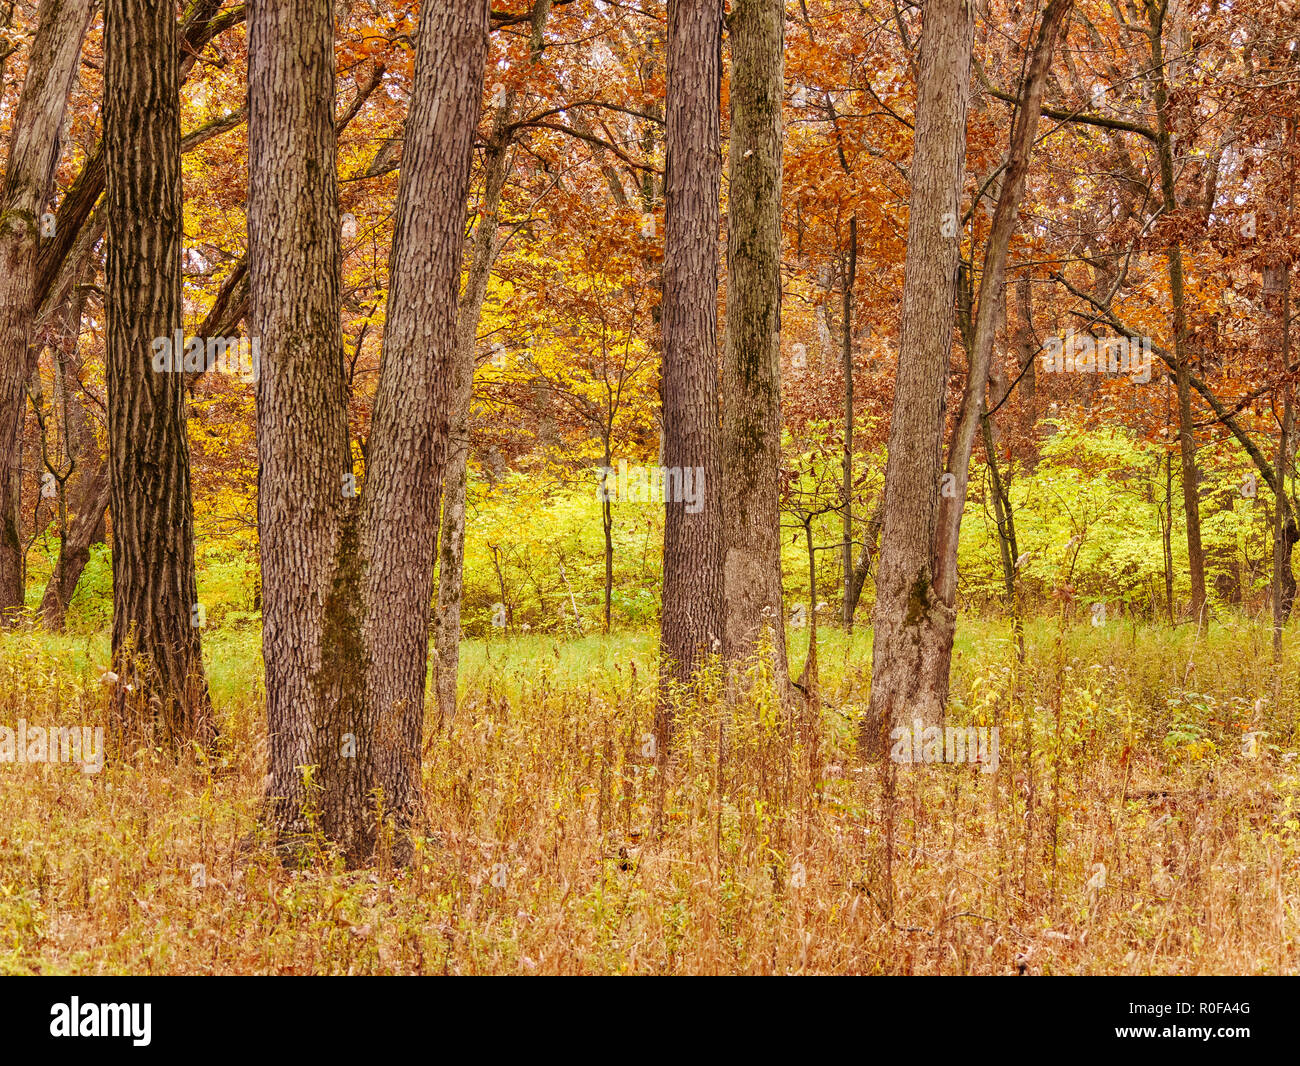 Il ripristino dell'habitat della savana in legno di quercia, con area non ripristinati soffocato con il caprifoglio amur in background. Vicolo del paese Wooks, Illinois. Foto Stock